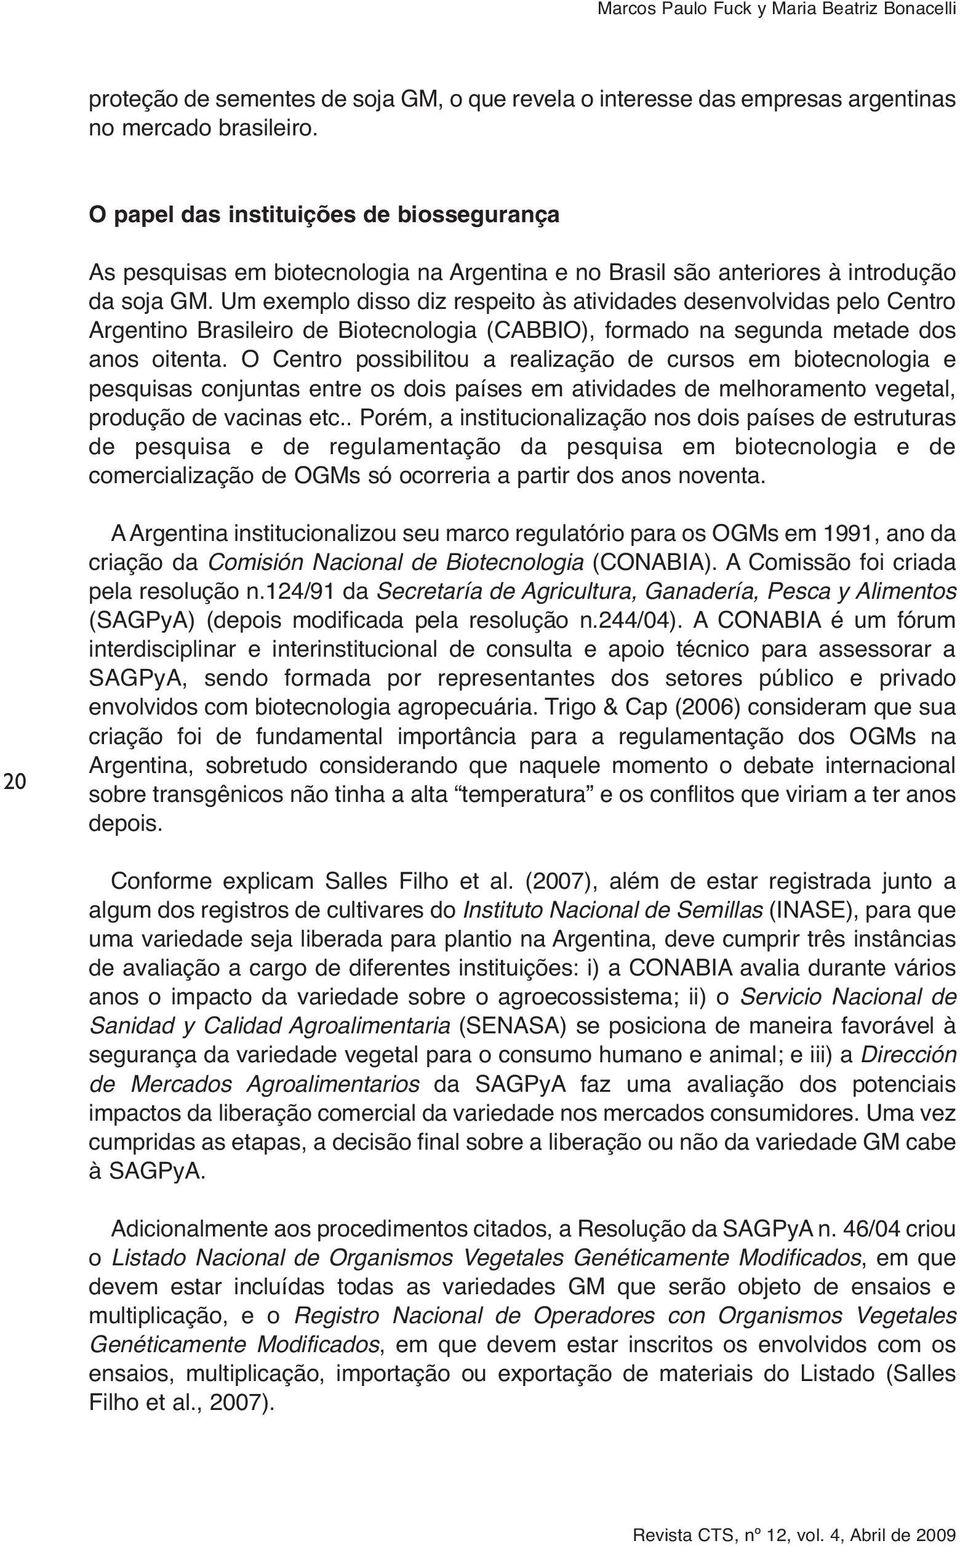 Um exemplo disso diz respeito às atividades desenvolvidas pelo Centro Argentino Brasileiro de Biotecnologia (CABBIO), formado na segunda metade dos anos oitenta.